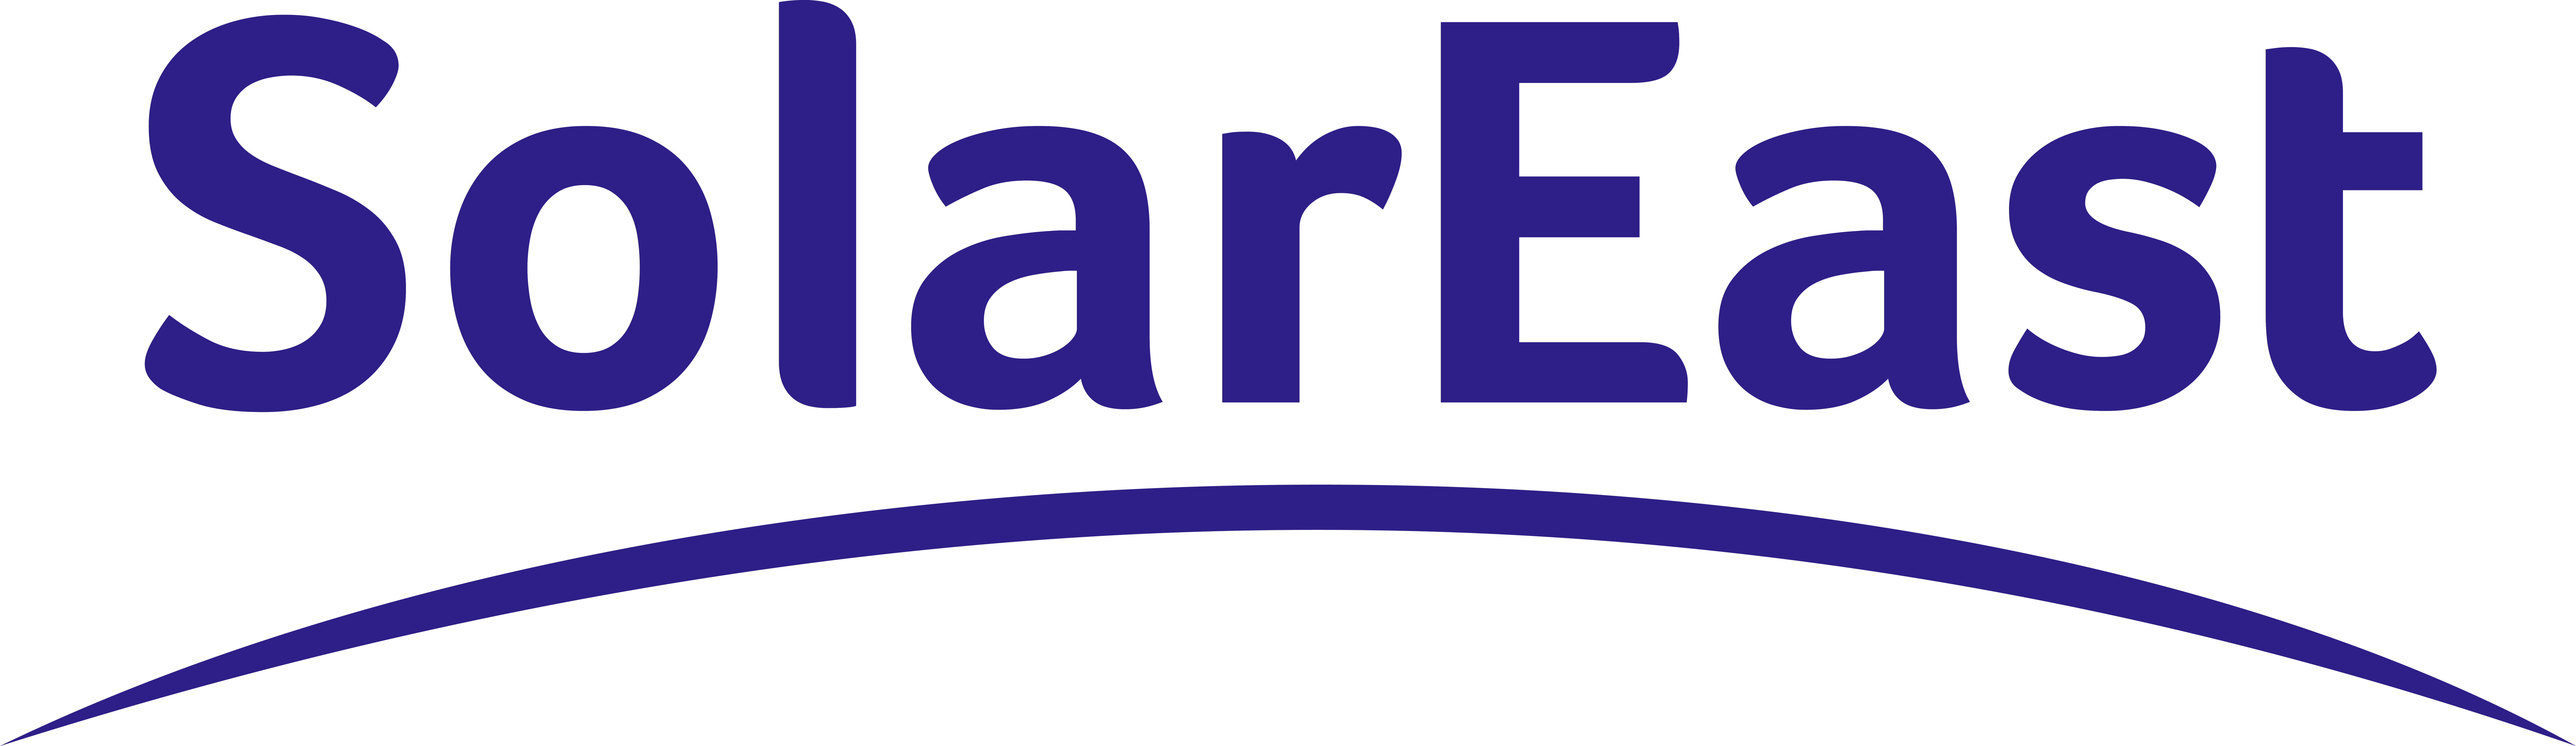 air source heat pump manufacturer logo